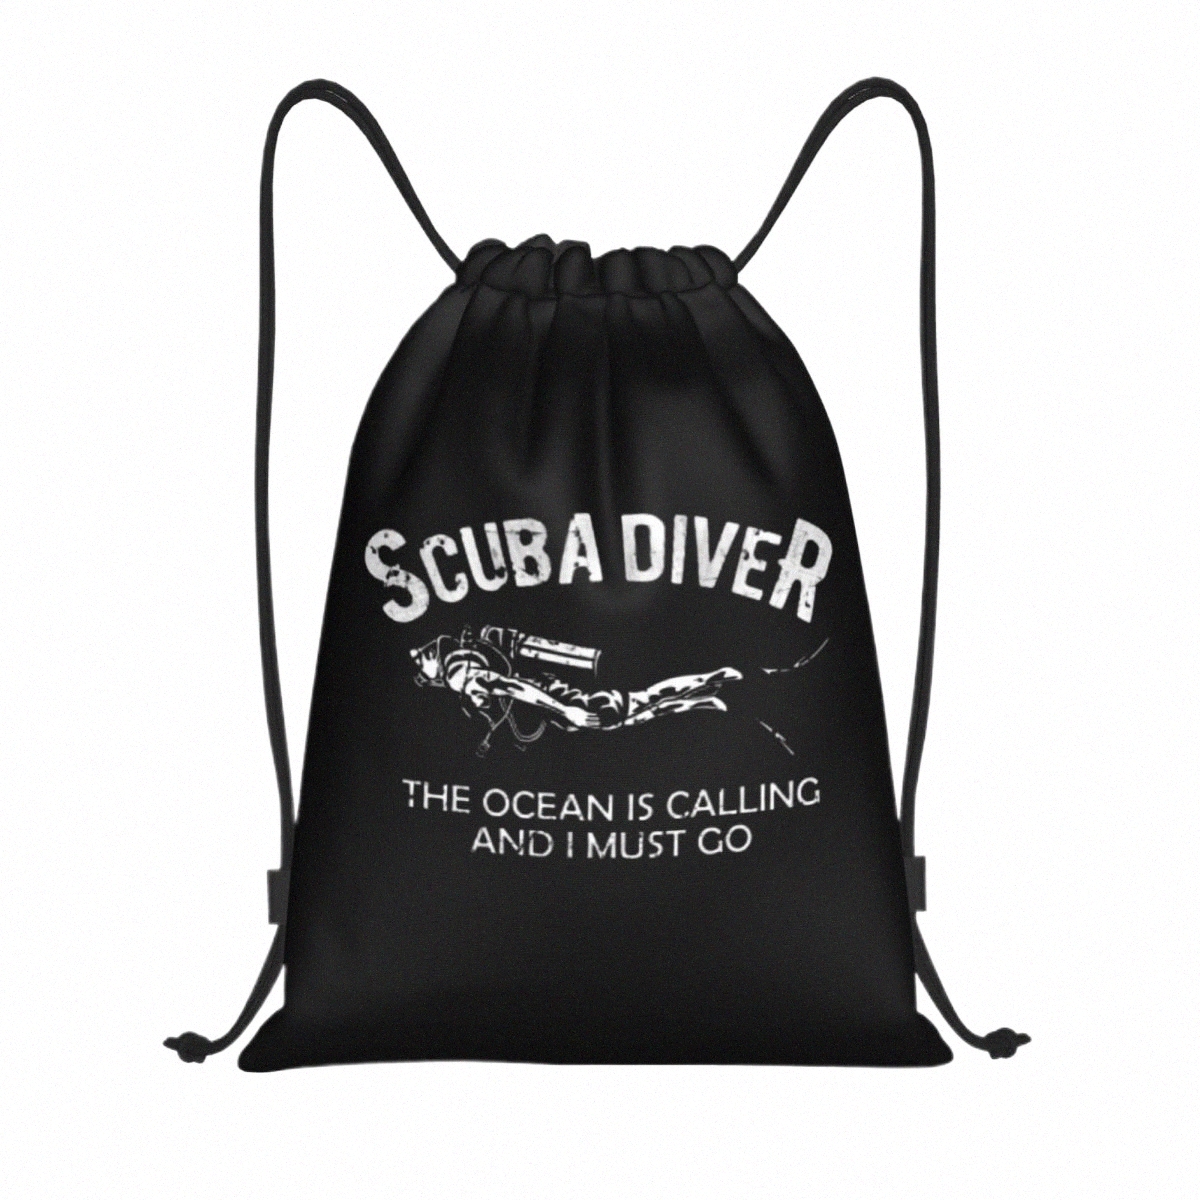 Scuba Diver DrawString Backpack Sports Gym Bag 남성 여성을위한 바다가 부르고 있습니다.